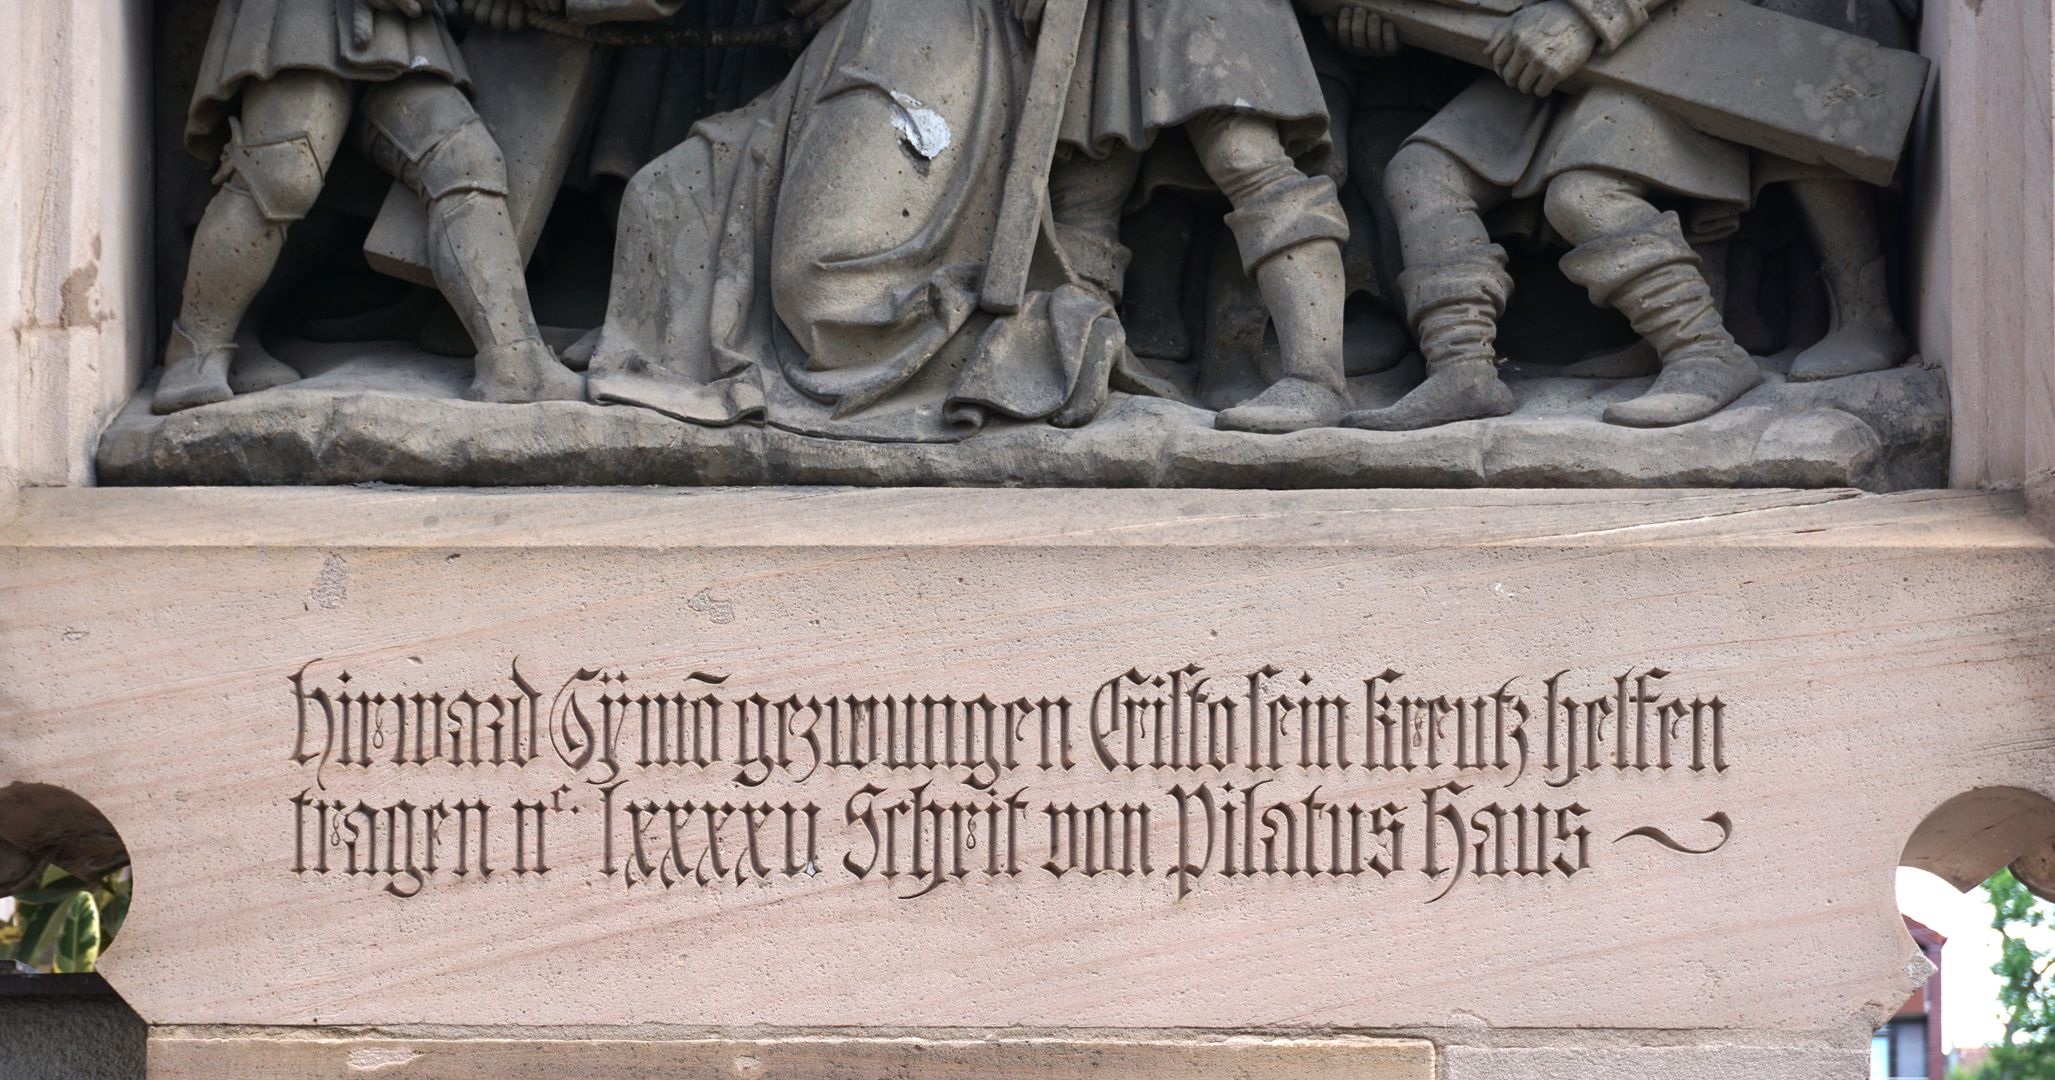 2nd Station of the Cross Inschrift: Hir ward Symo(n) gezwungen Cristo sein kreutz helfen tragen IIc LXXXXV (295) Schrit von Pilatus Haus